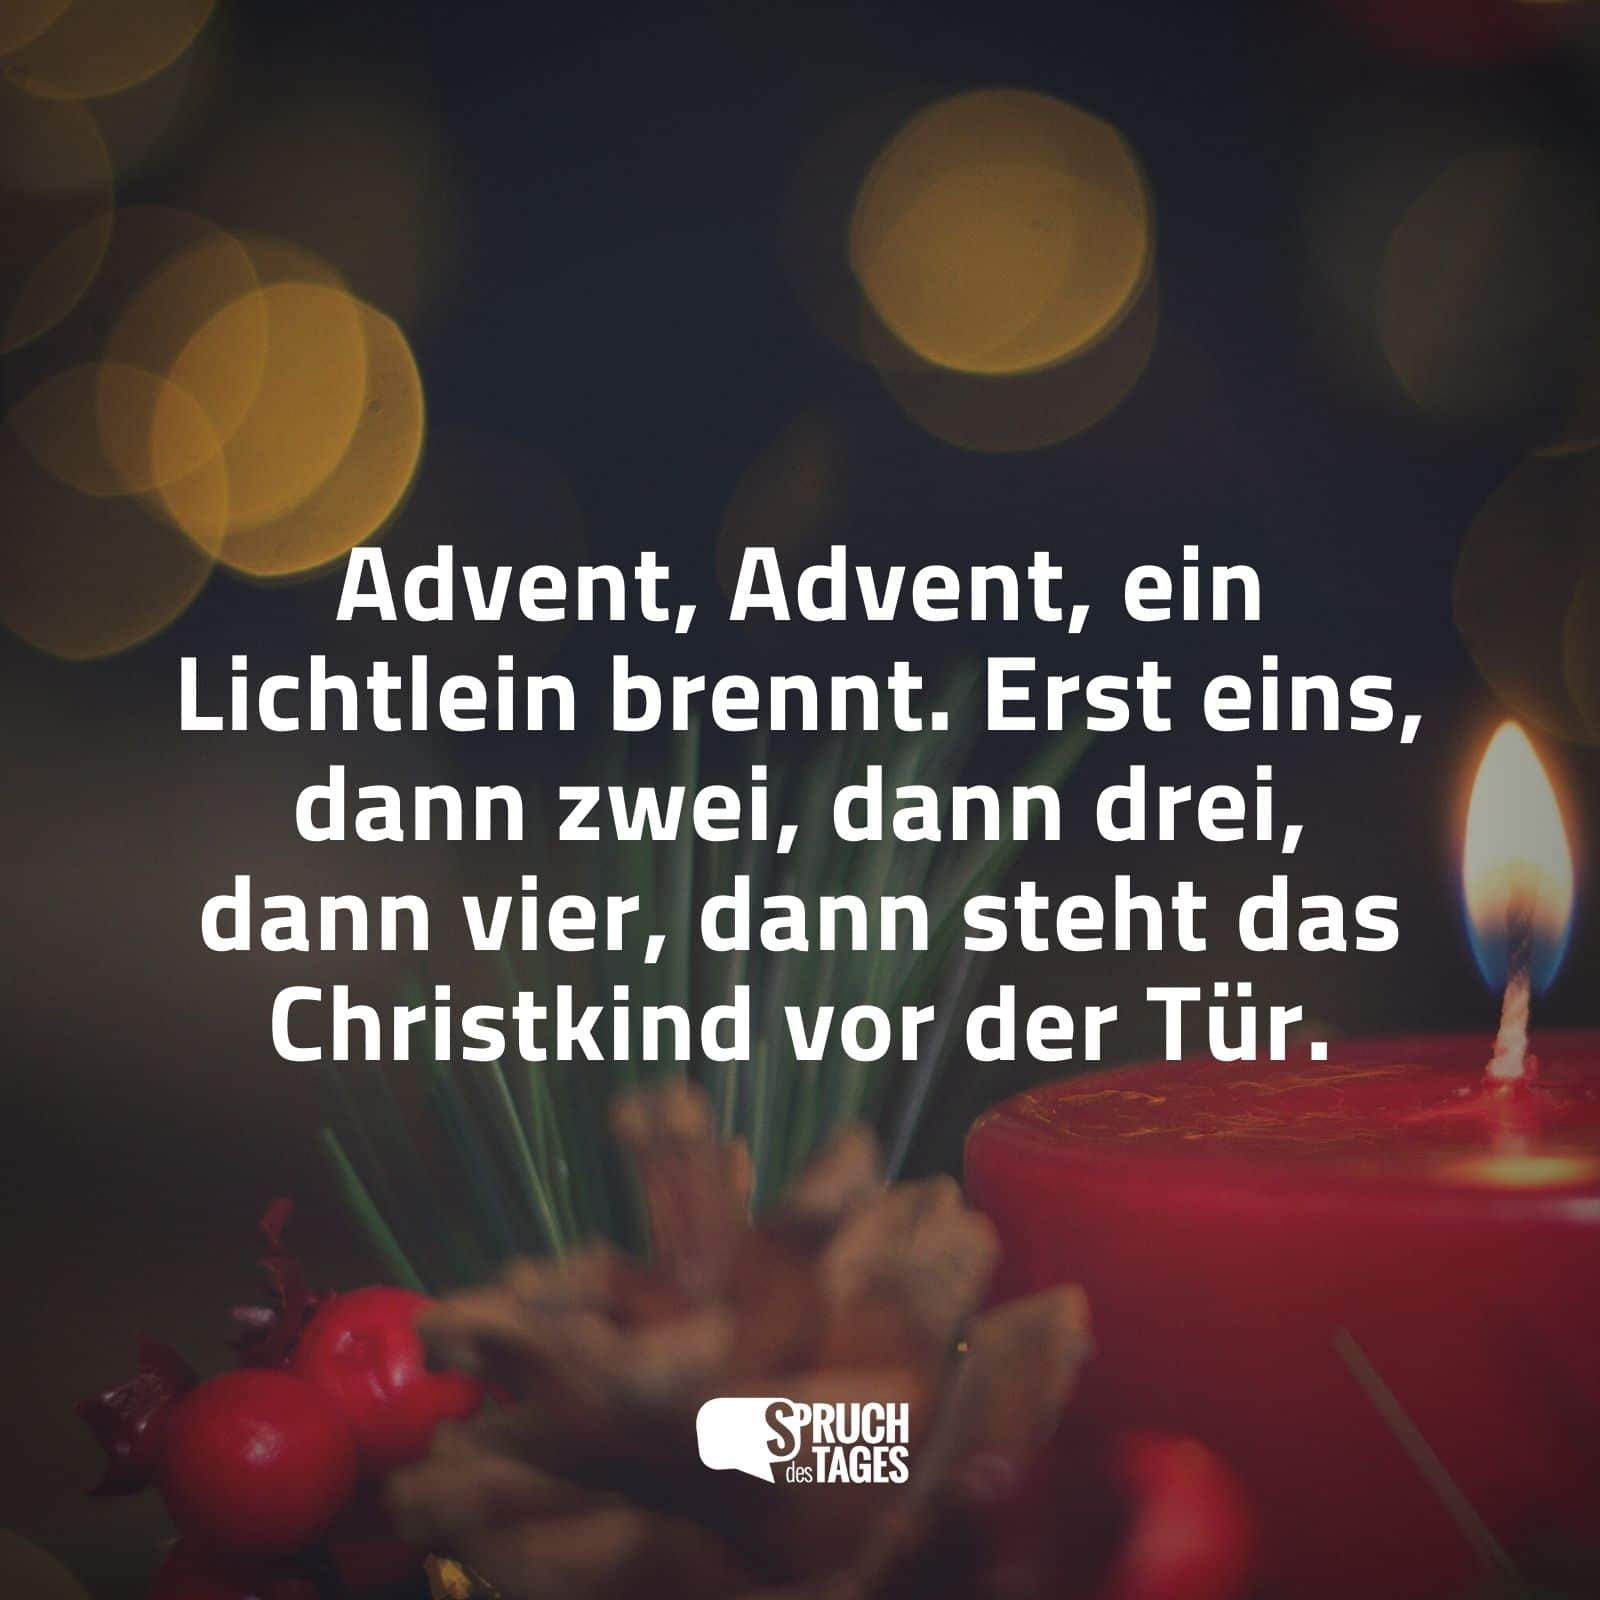 Advent, Advent, ein Lichtlein brennt. Erst eins, dann zwei, dann drei, dann vier, dann steht das Christkind vor der Tür.